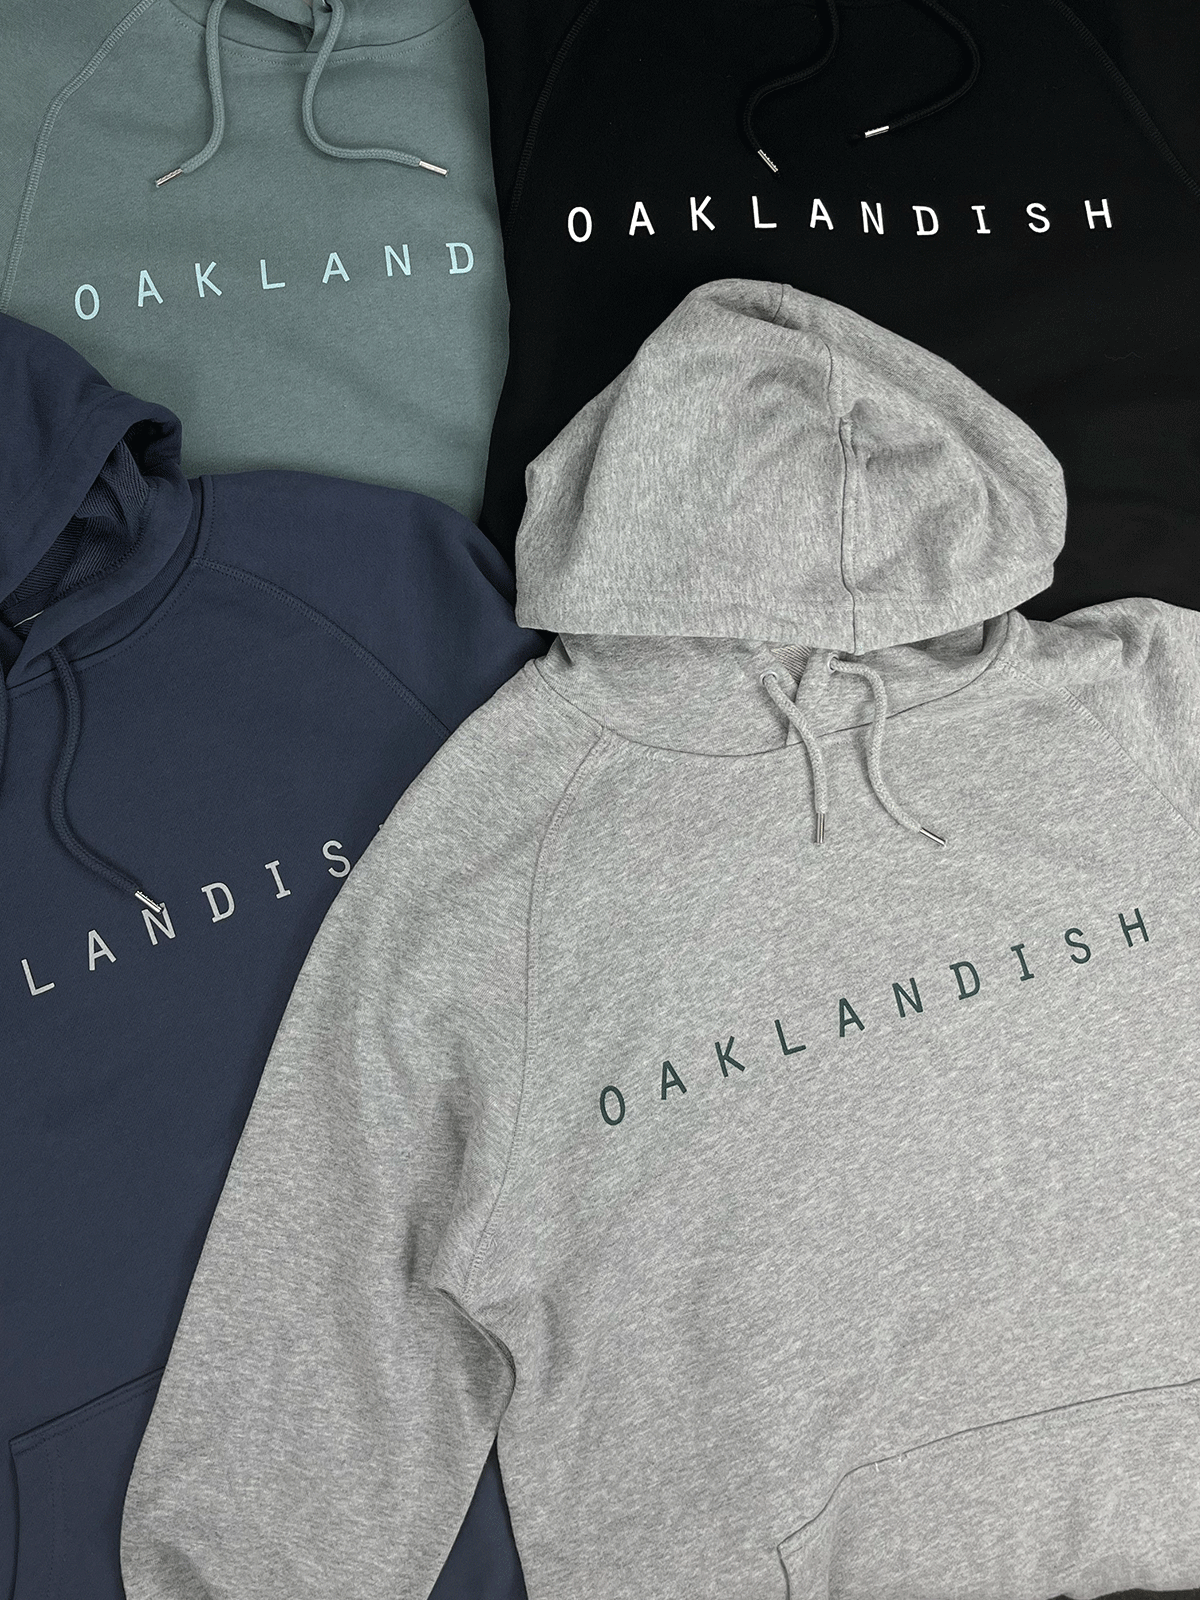 Premium Oaklandish classic hoodie.